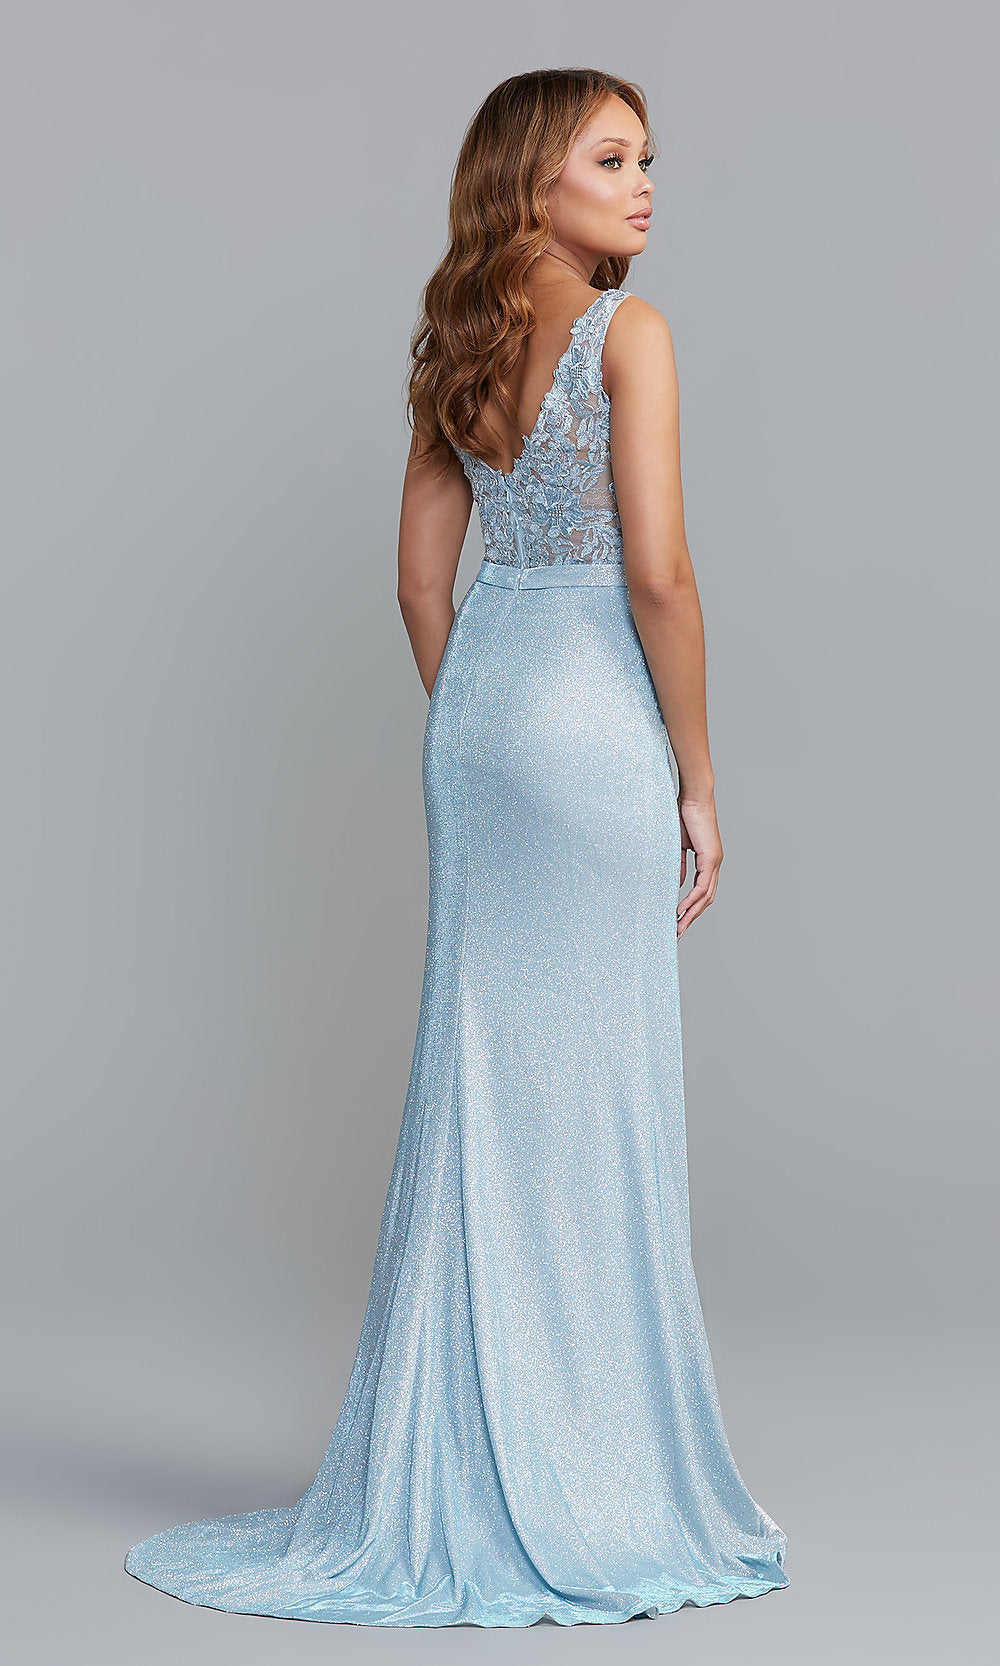 PromGirl Sheer-Bodice Long Glitter Prom Dress